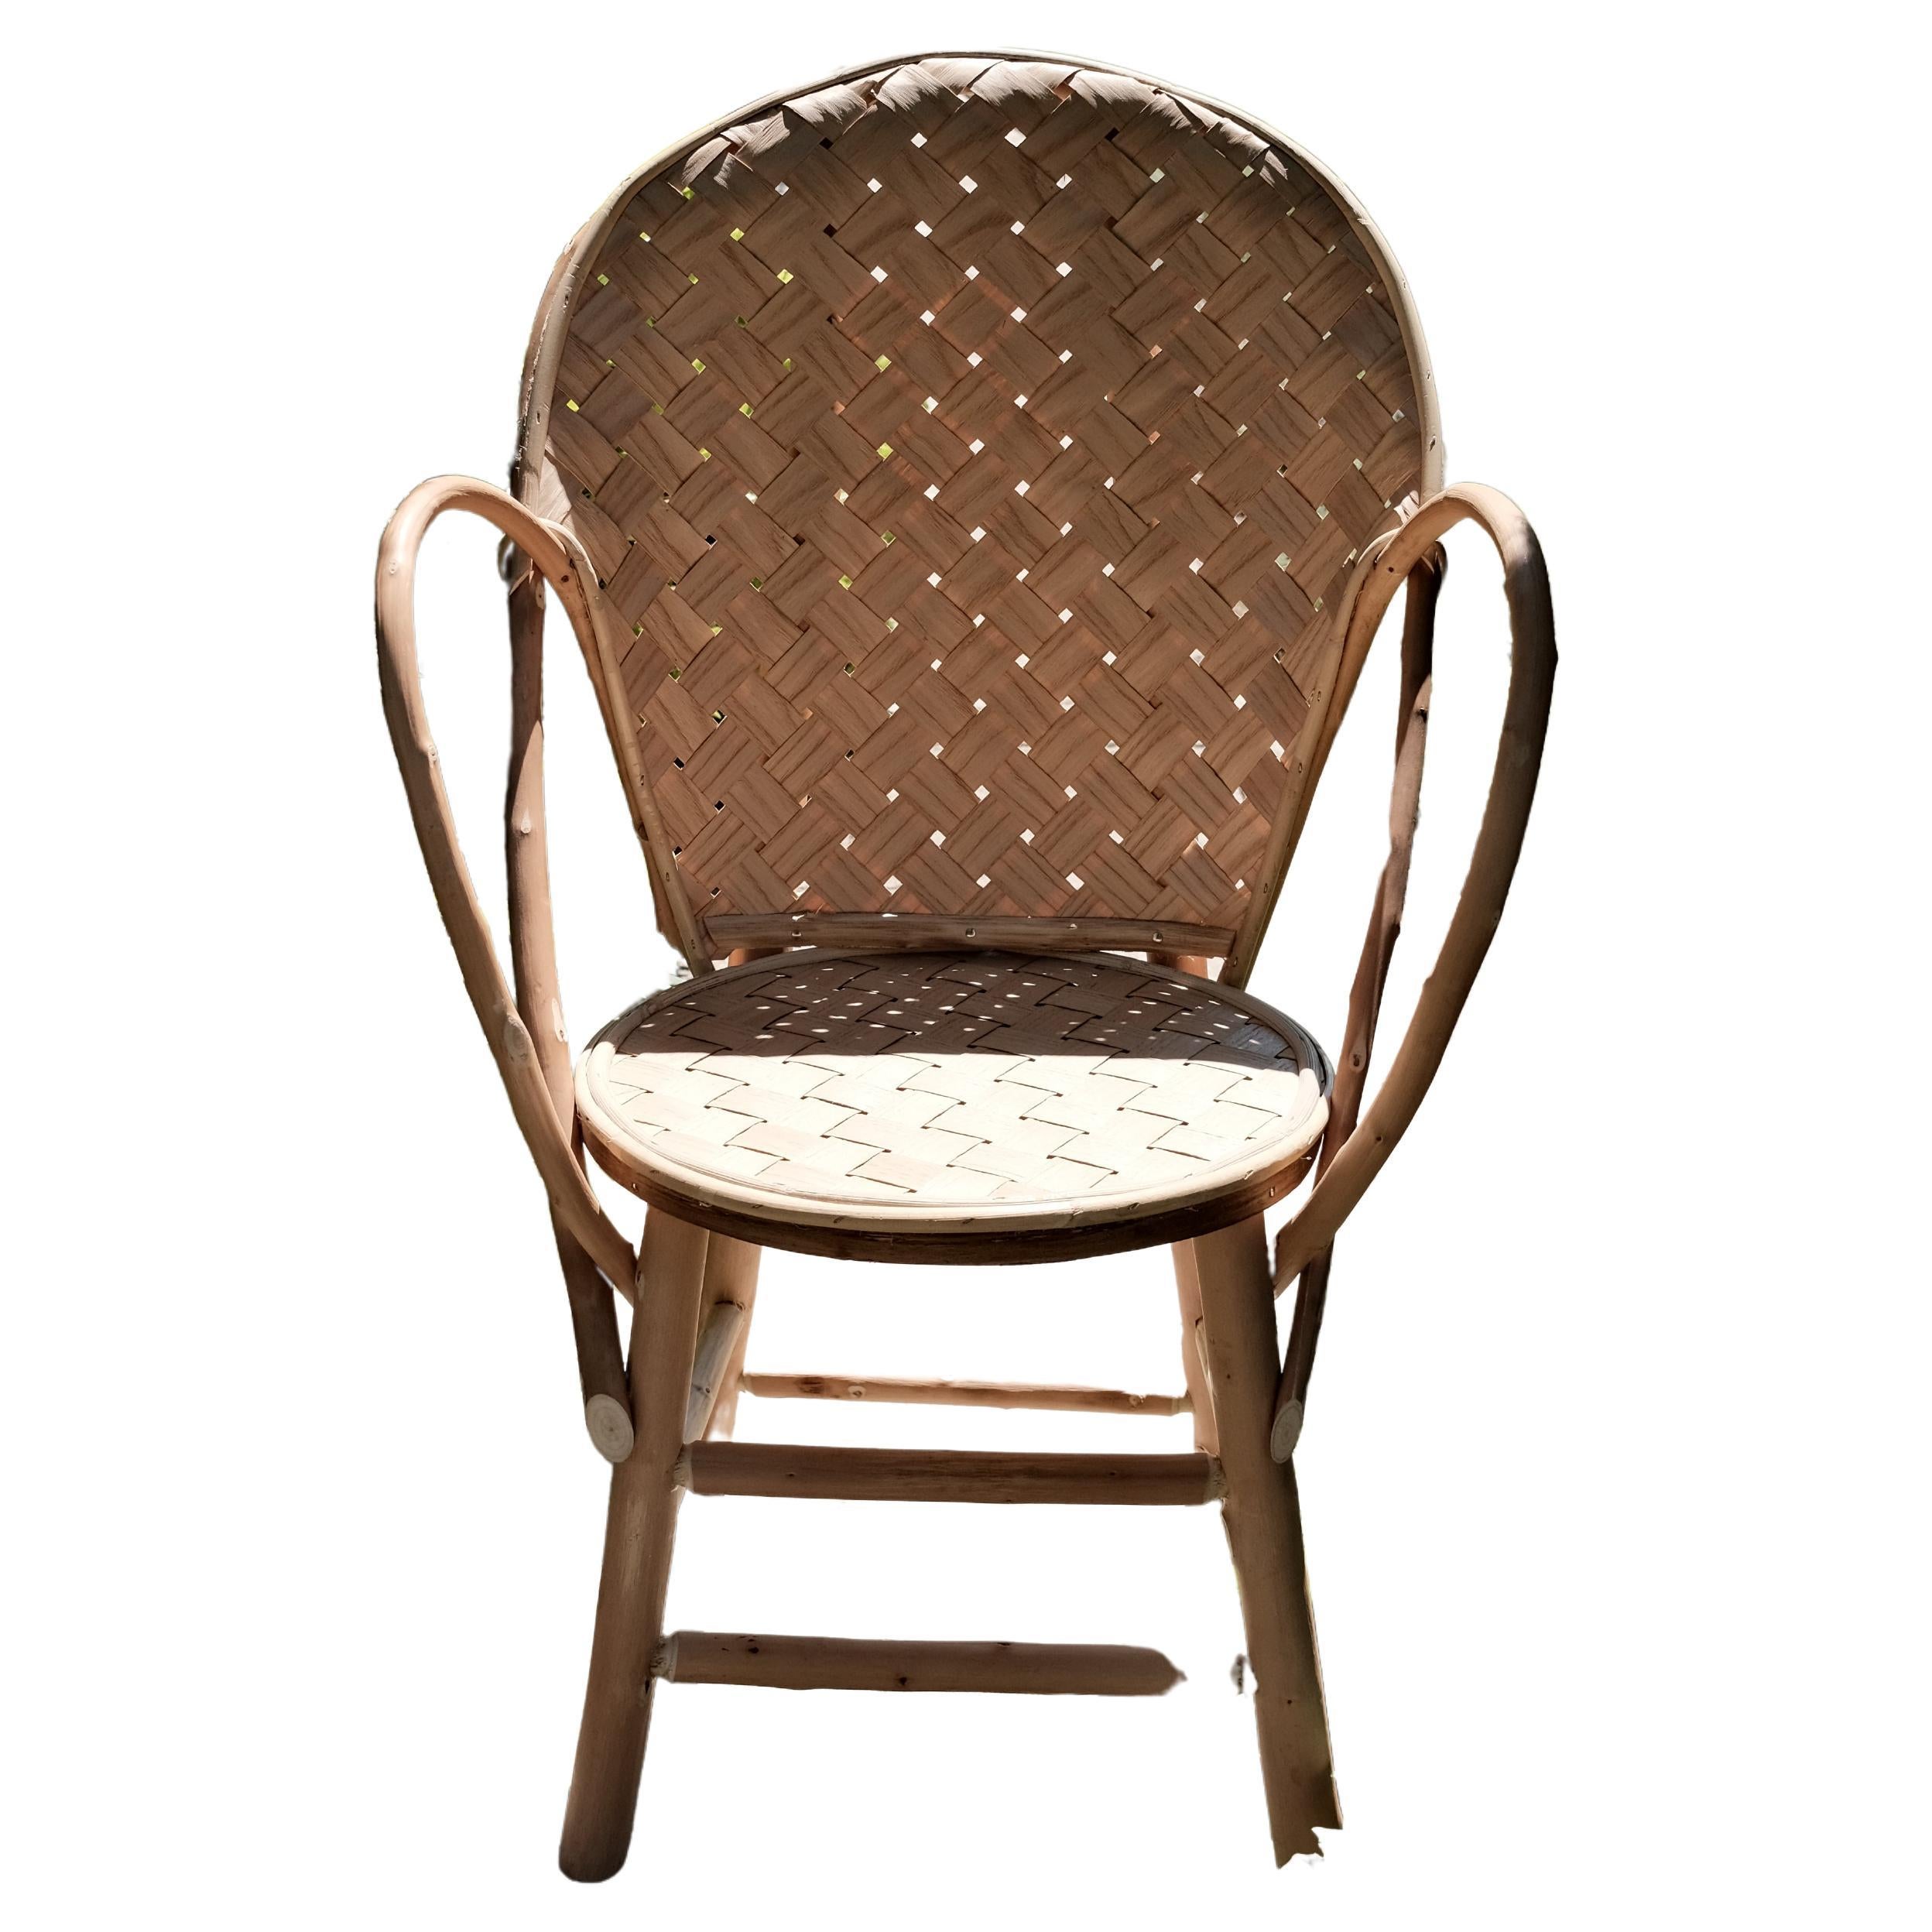 Le Fauteuil Classique Chair by Bosc Design For Sale